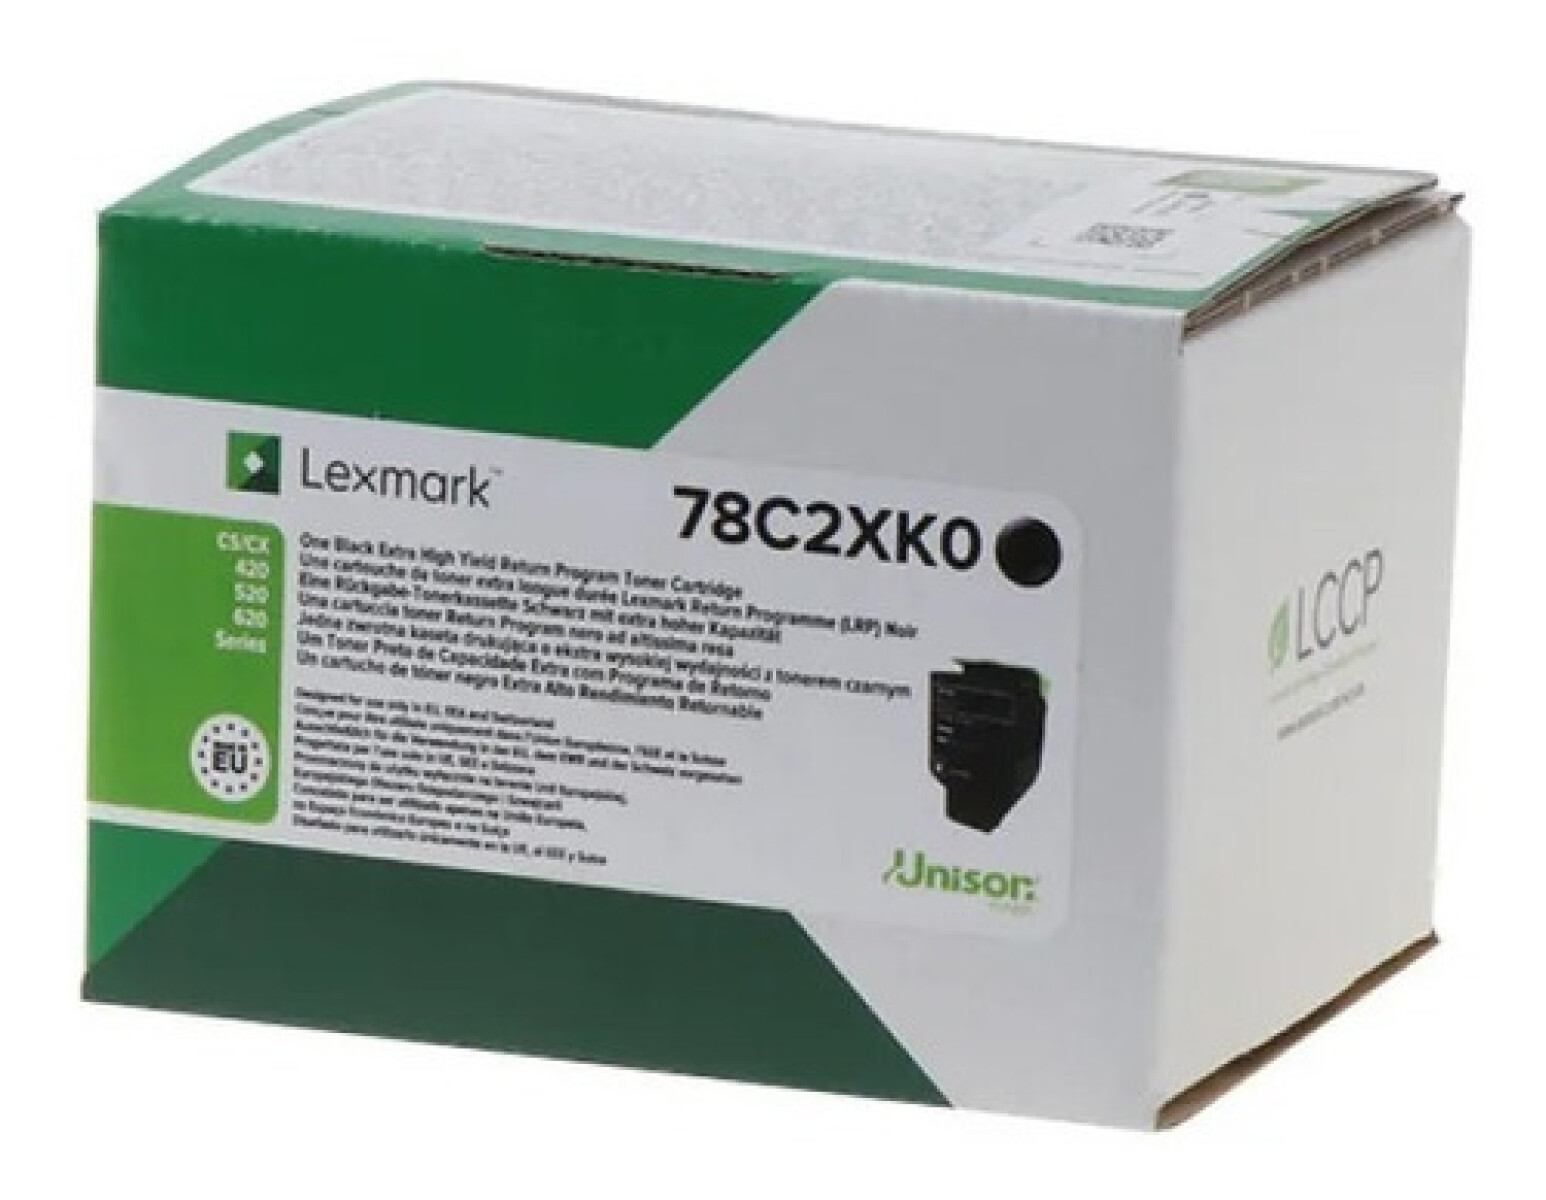 LEXMARK TONER 78C4XK0 NEGRO CX522/421 8500 CPS - 2827 